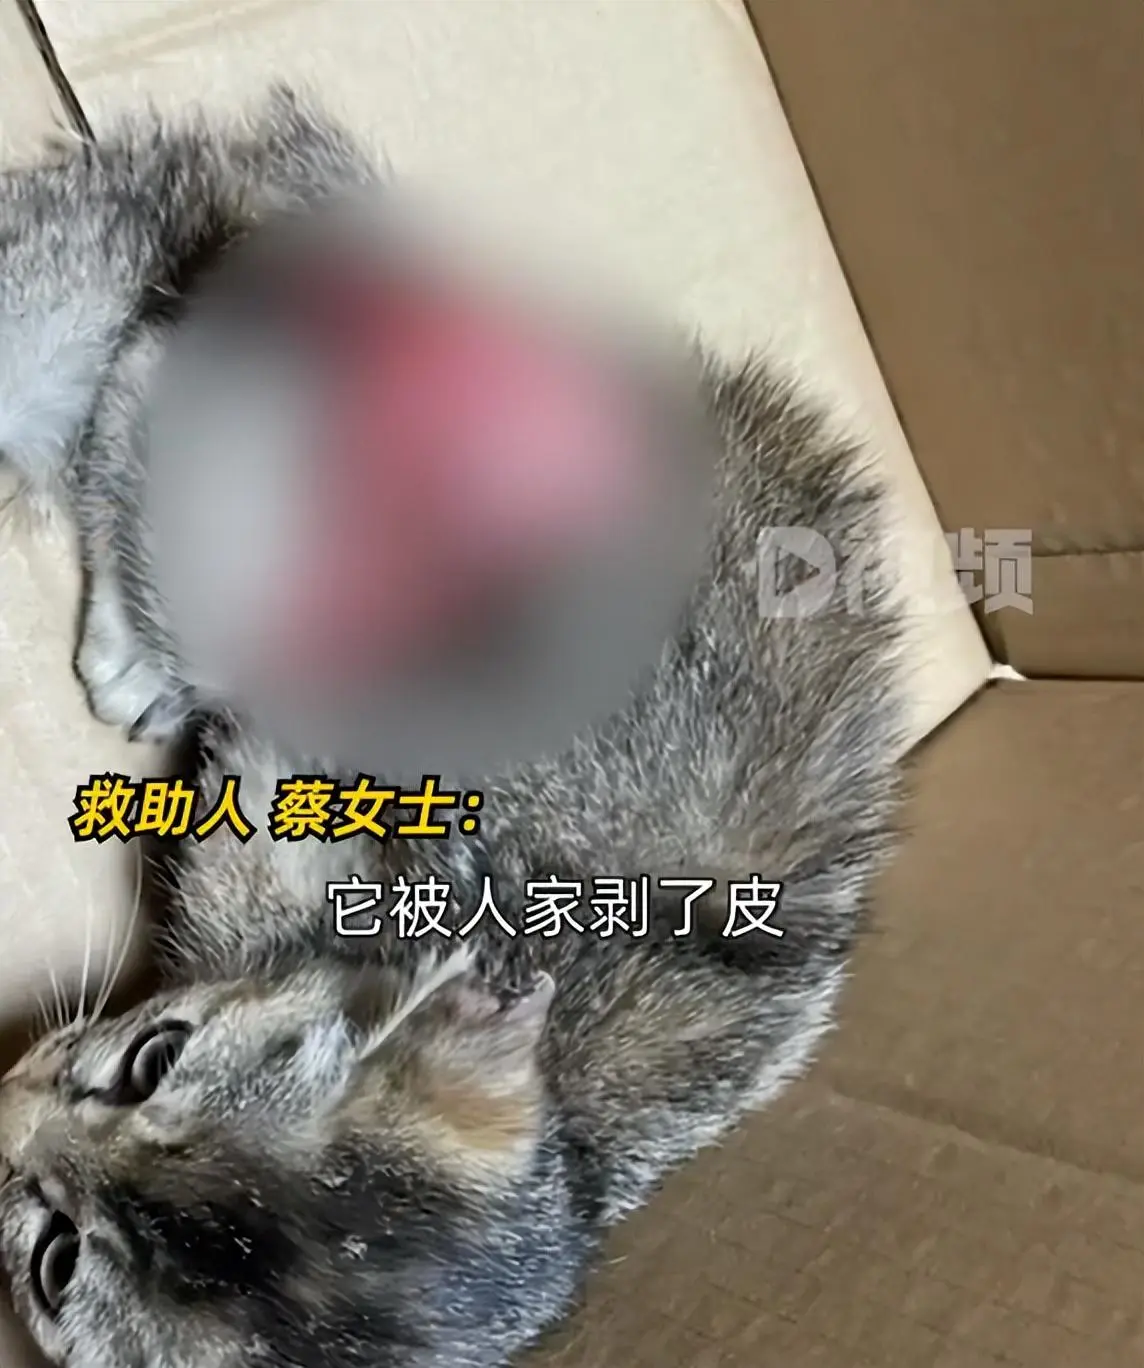 猫咪被剥皮扔在路边，画面极其残忍，女子花2万救援流浪猫